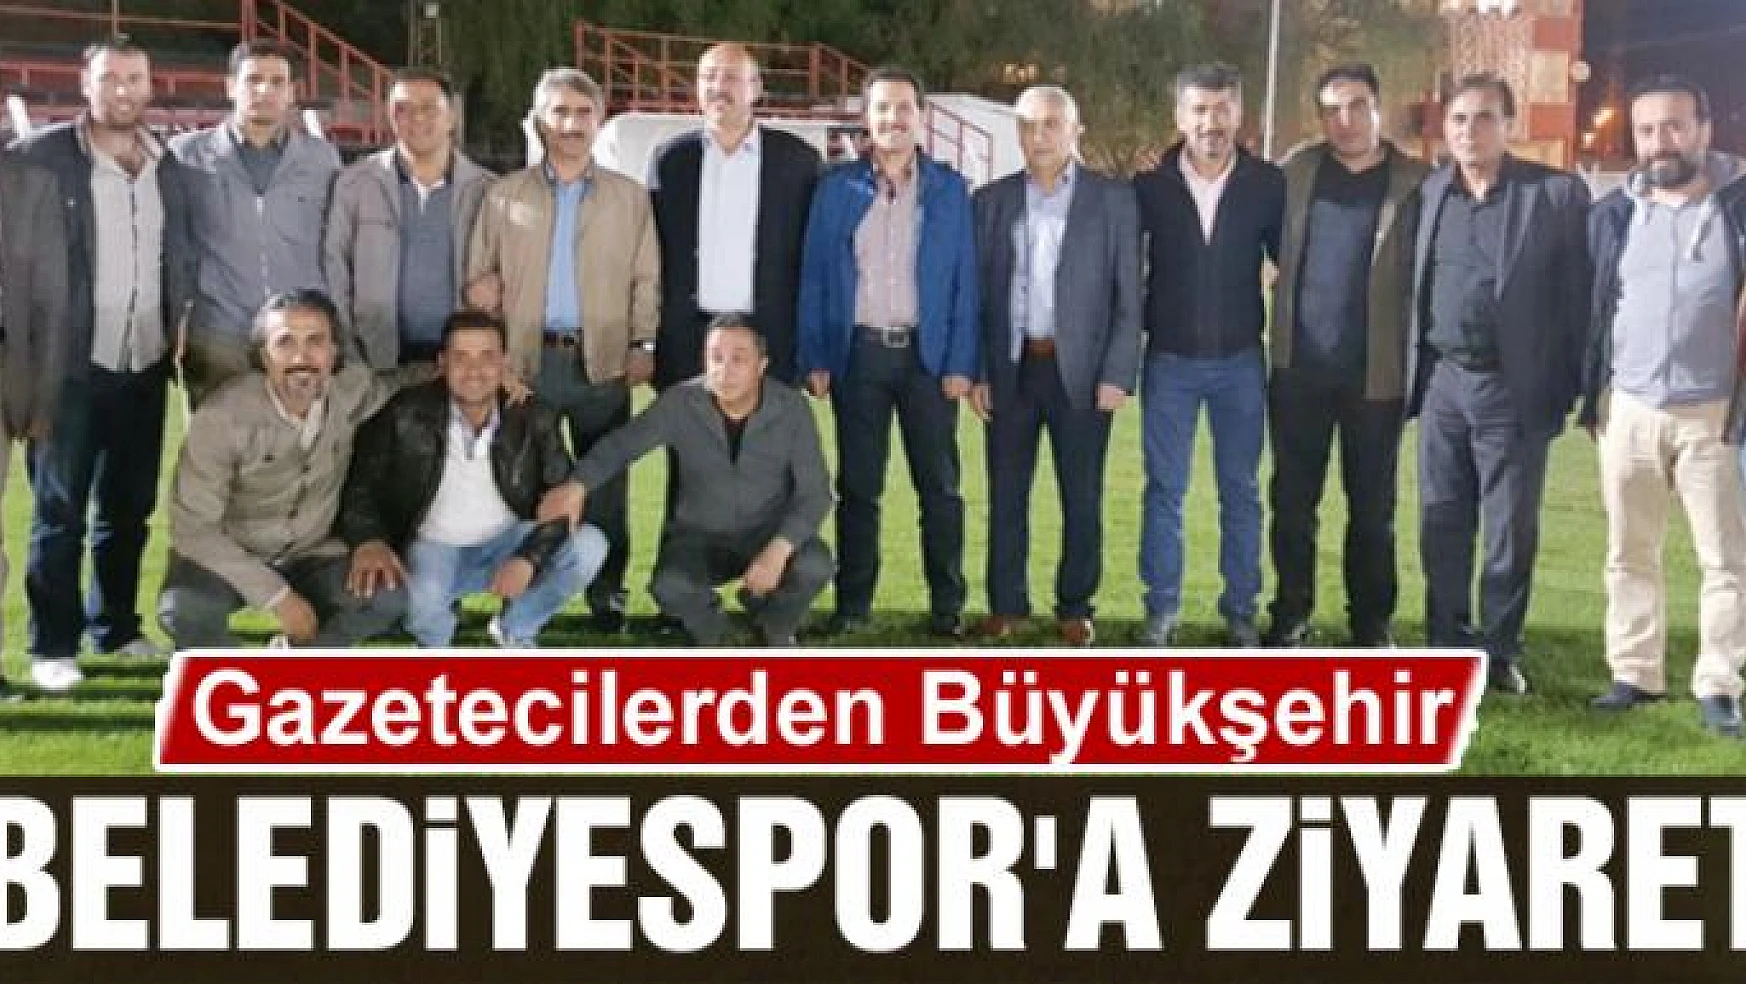 Gazetecilerden Büyükşehir Belediyespor'a Ziyaret